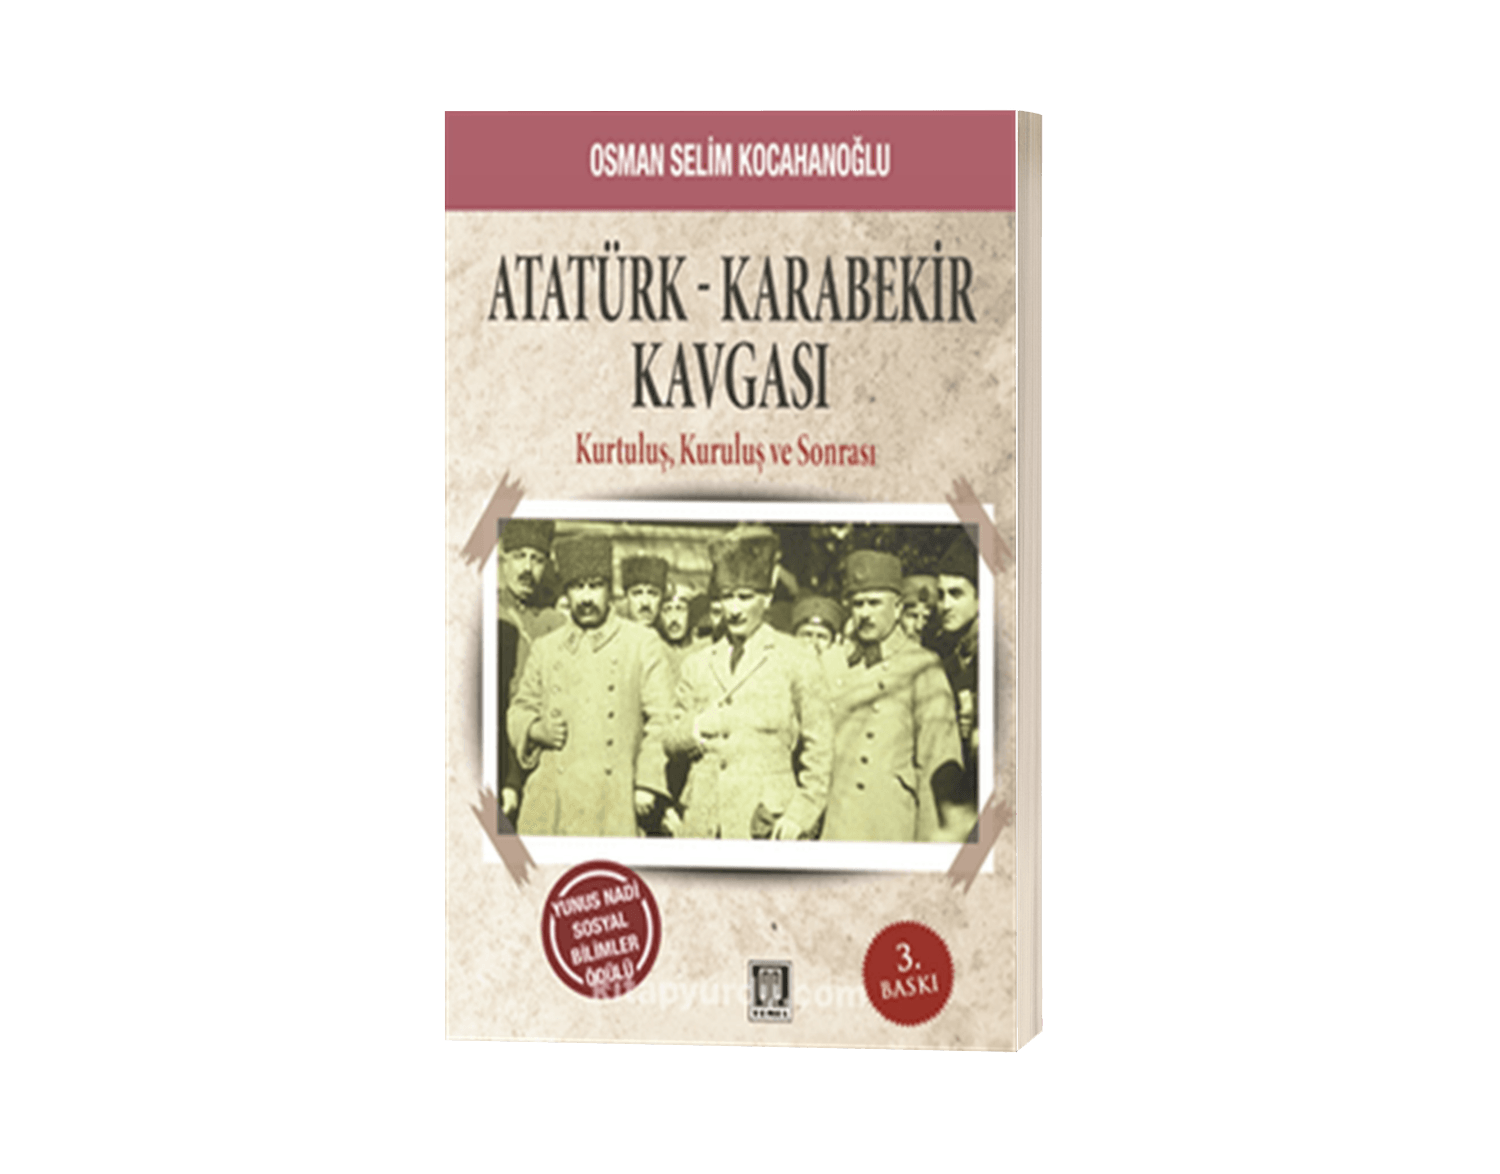 Atatürk-Karabekir Kavgası Kurtuluş, Kuruluş ve Sonrası